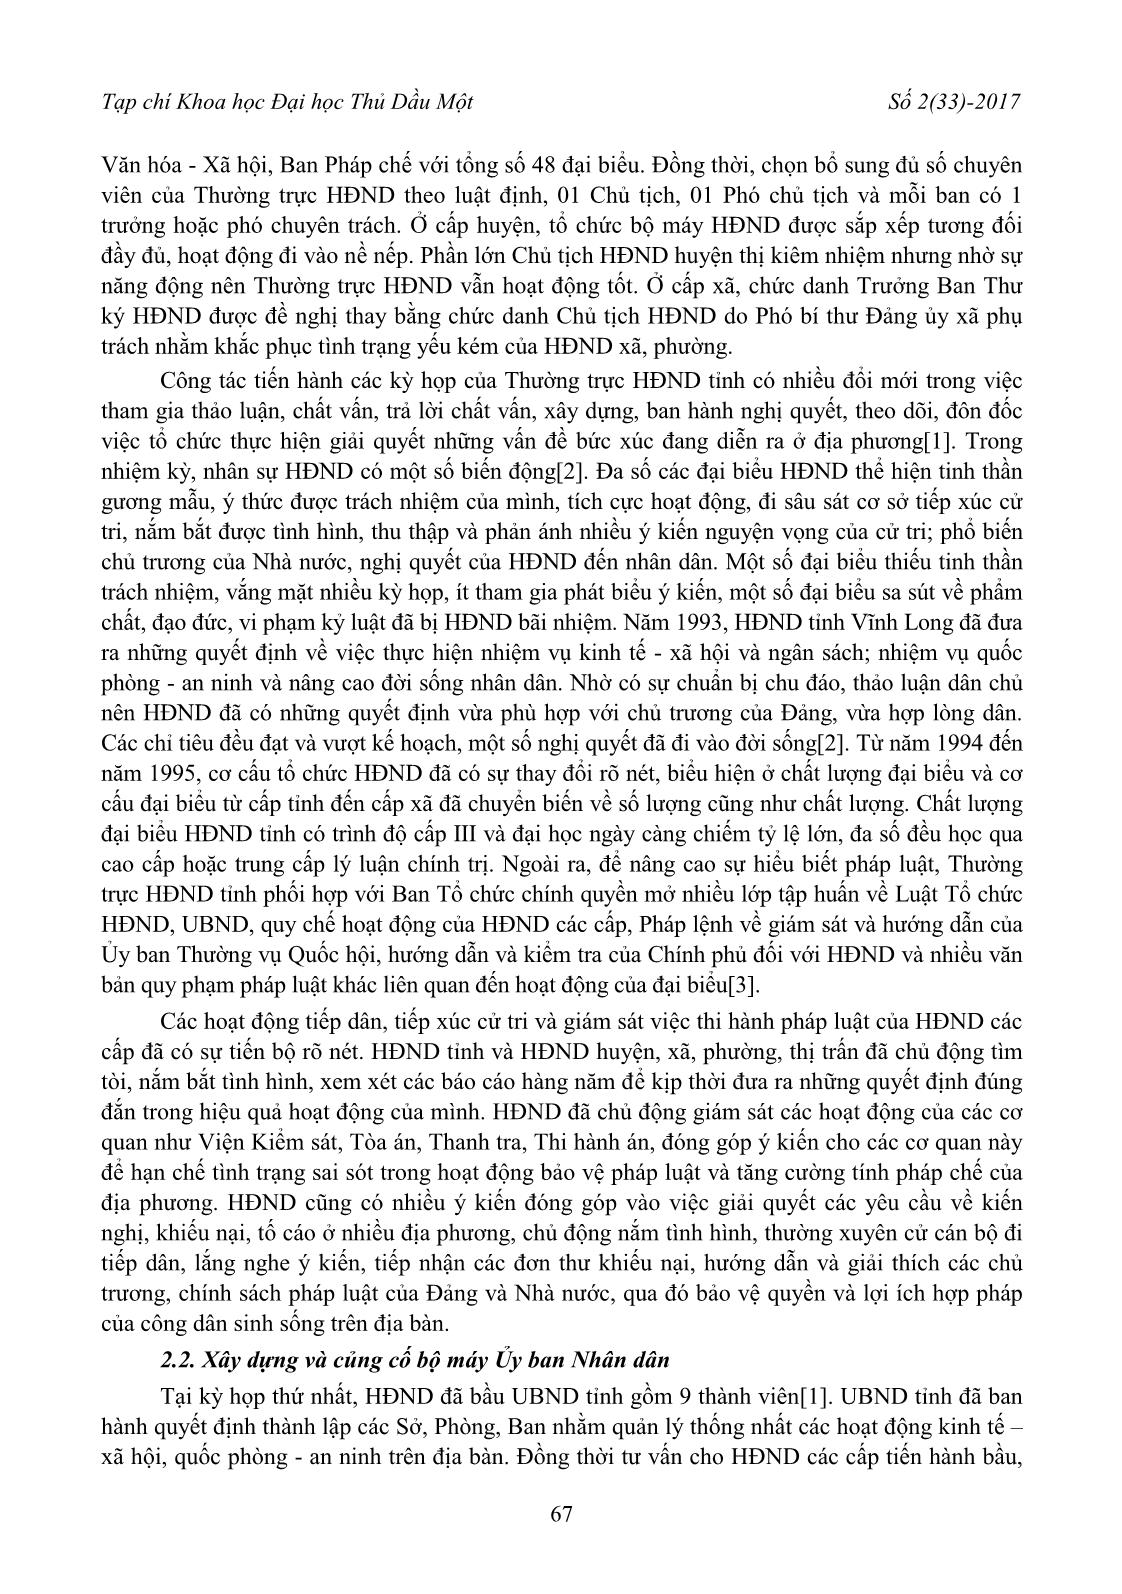 Hoạt động của hội đồng nhân dân và ủy ban nhân dân tỉnh Vĩnh Long những năm đầu tái lập tỉnh (1991 - 1997) trang 3